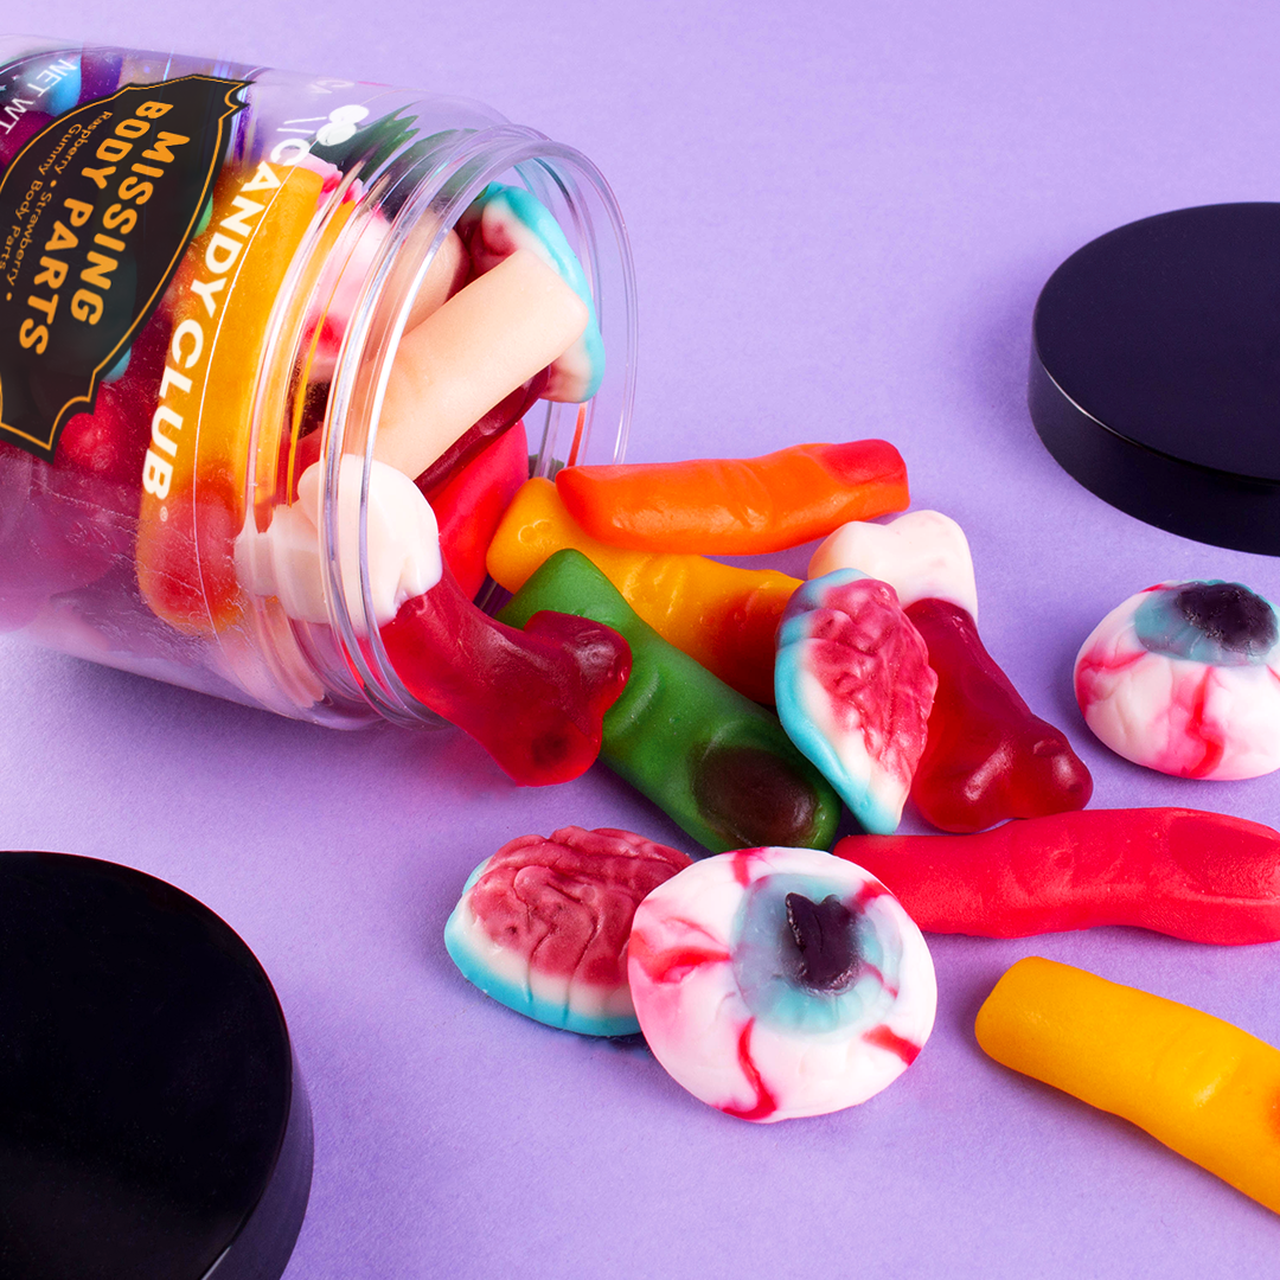 Halloween body Parts - Candy Club Gummy - DoorBuster Deal